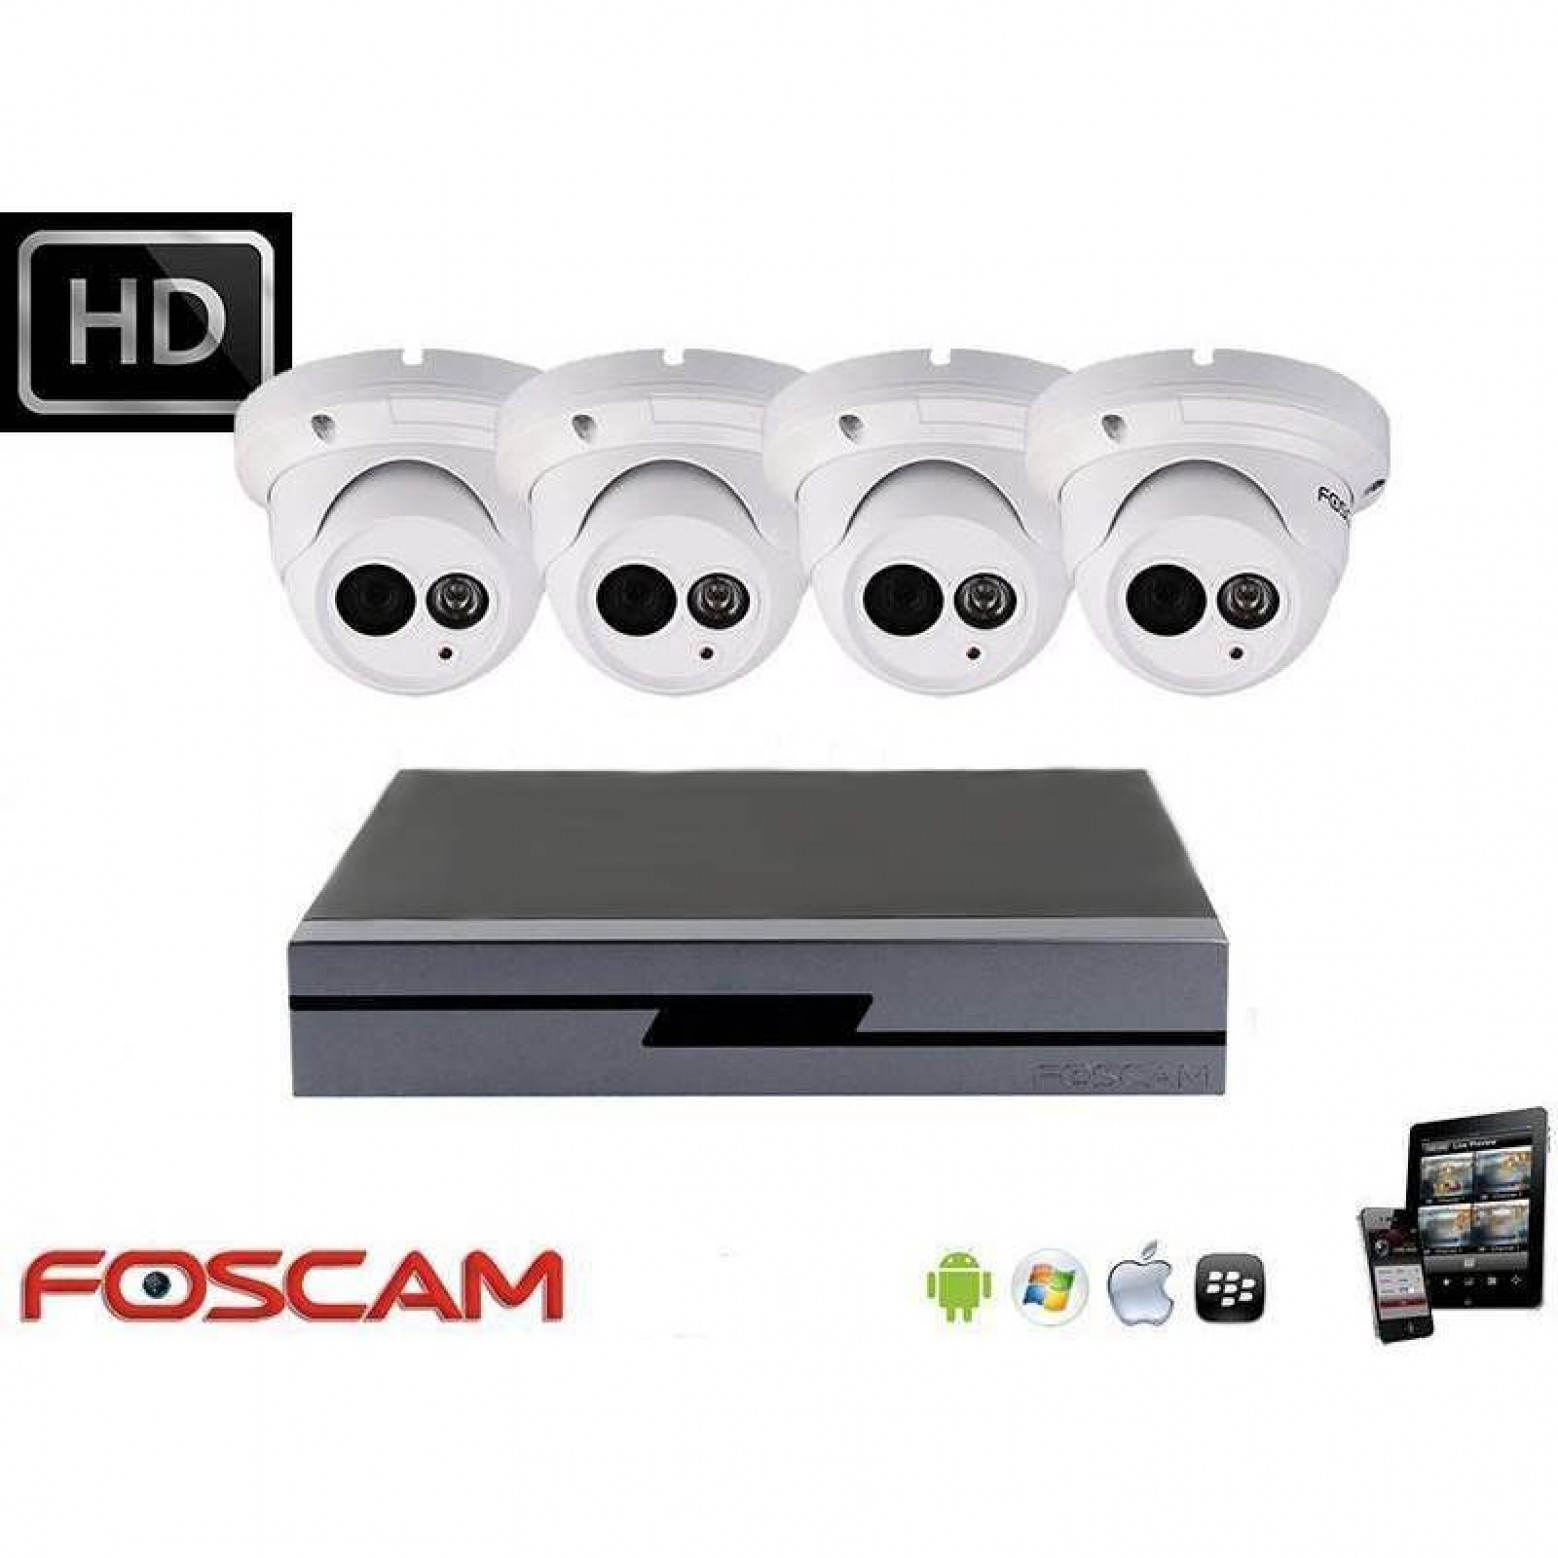 Foscam IP camerabewaking set 4x dome